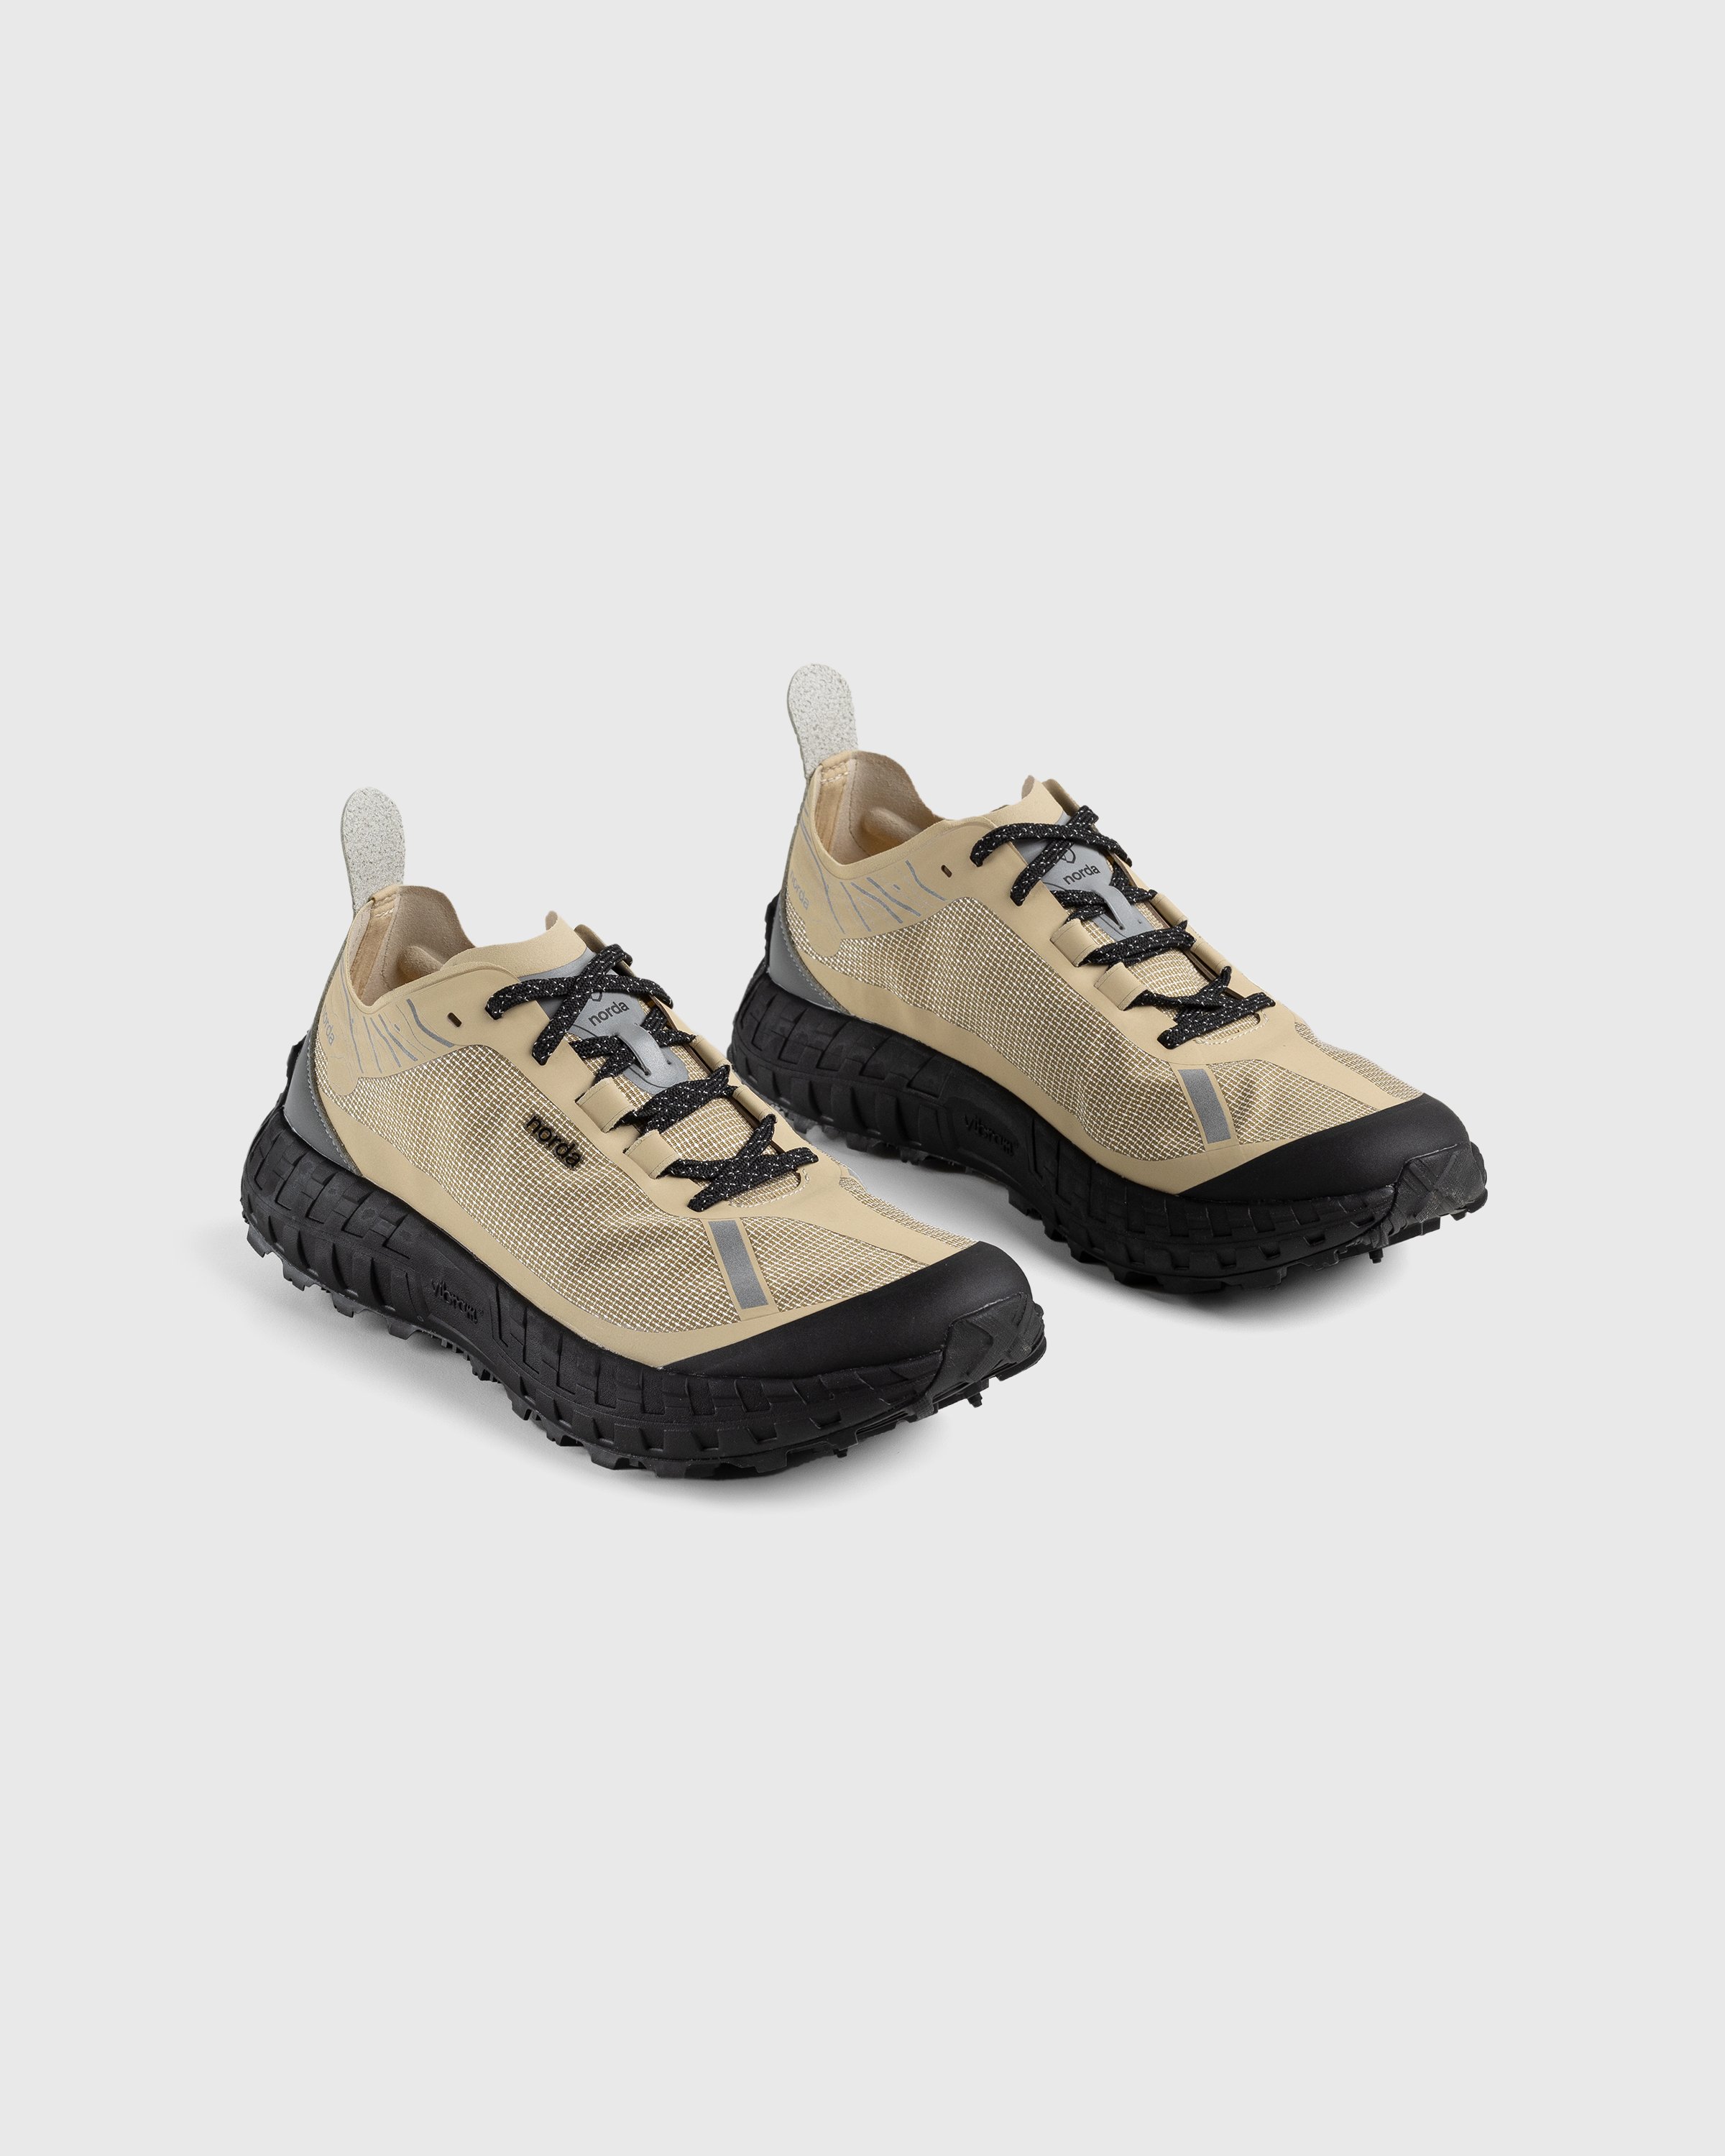 Norda - 001 M Pebble - Footwear - Brown - Image 3